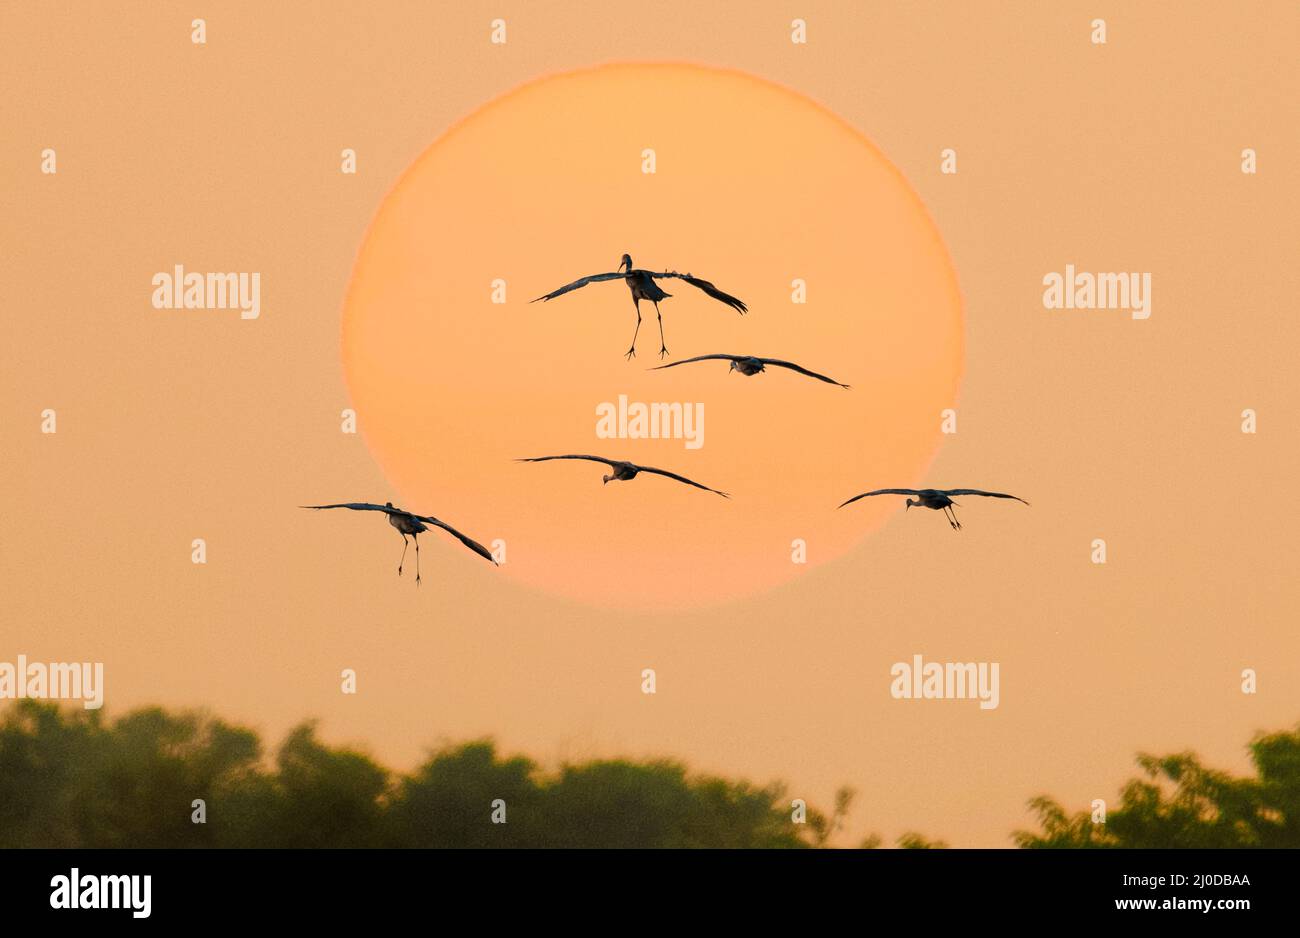 Überwintern von Sandhill Cranes in einer leichten Silhouette, die von der orangen Sonne verstrahlt wird Stockfoto